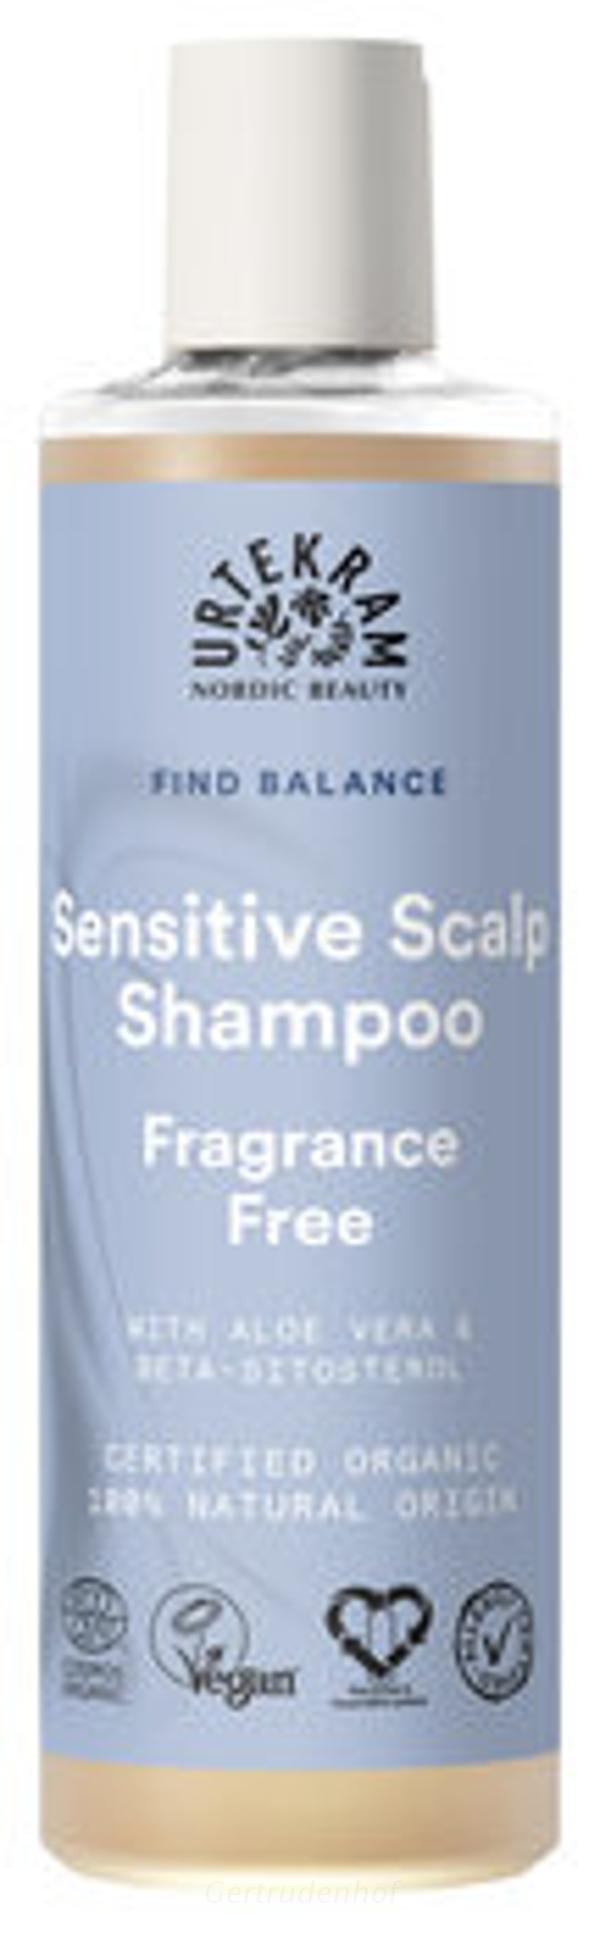 Produktfoto zu Shampoo sensit. duftfrei 250ml